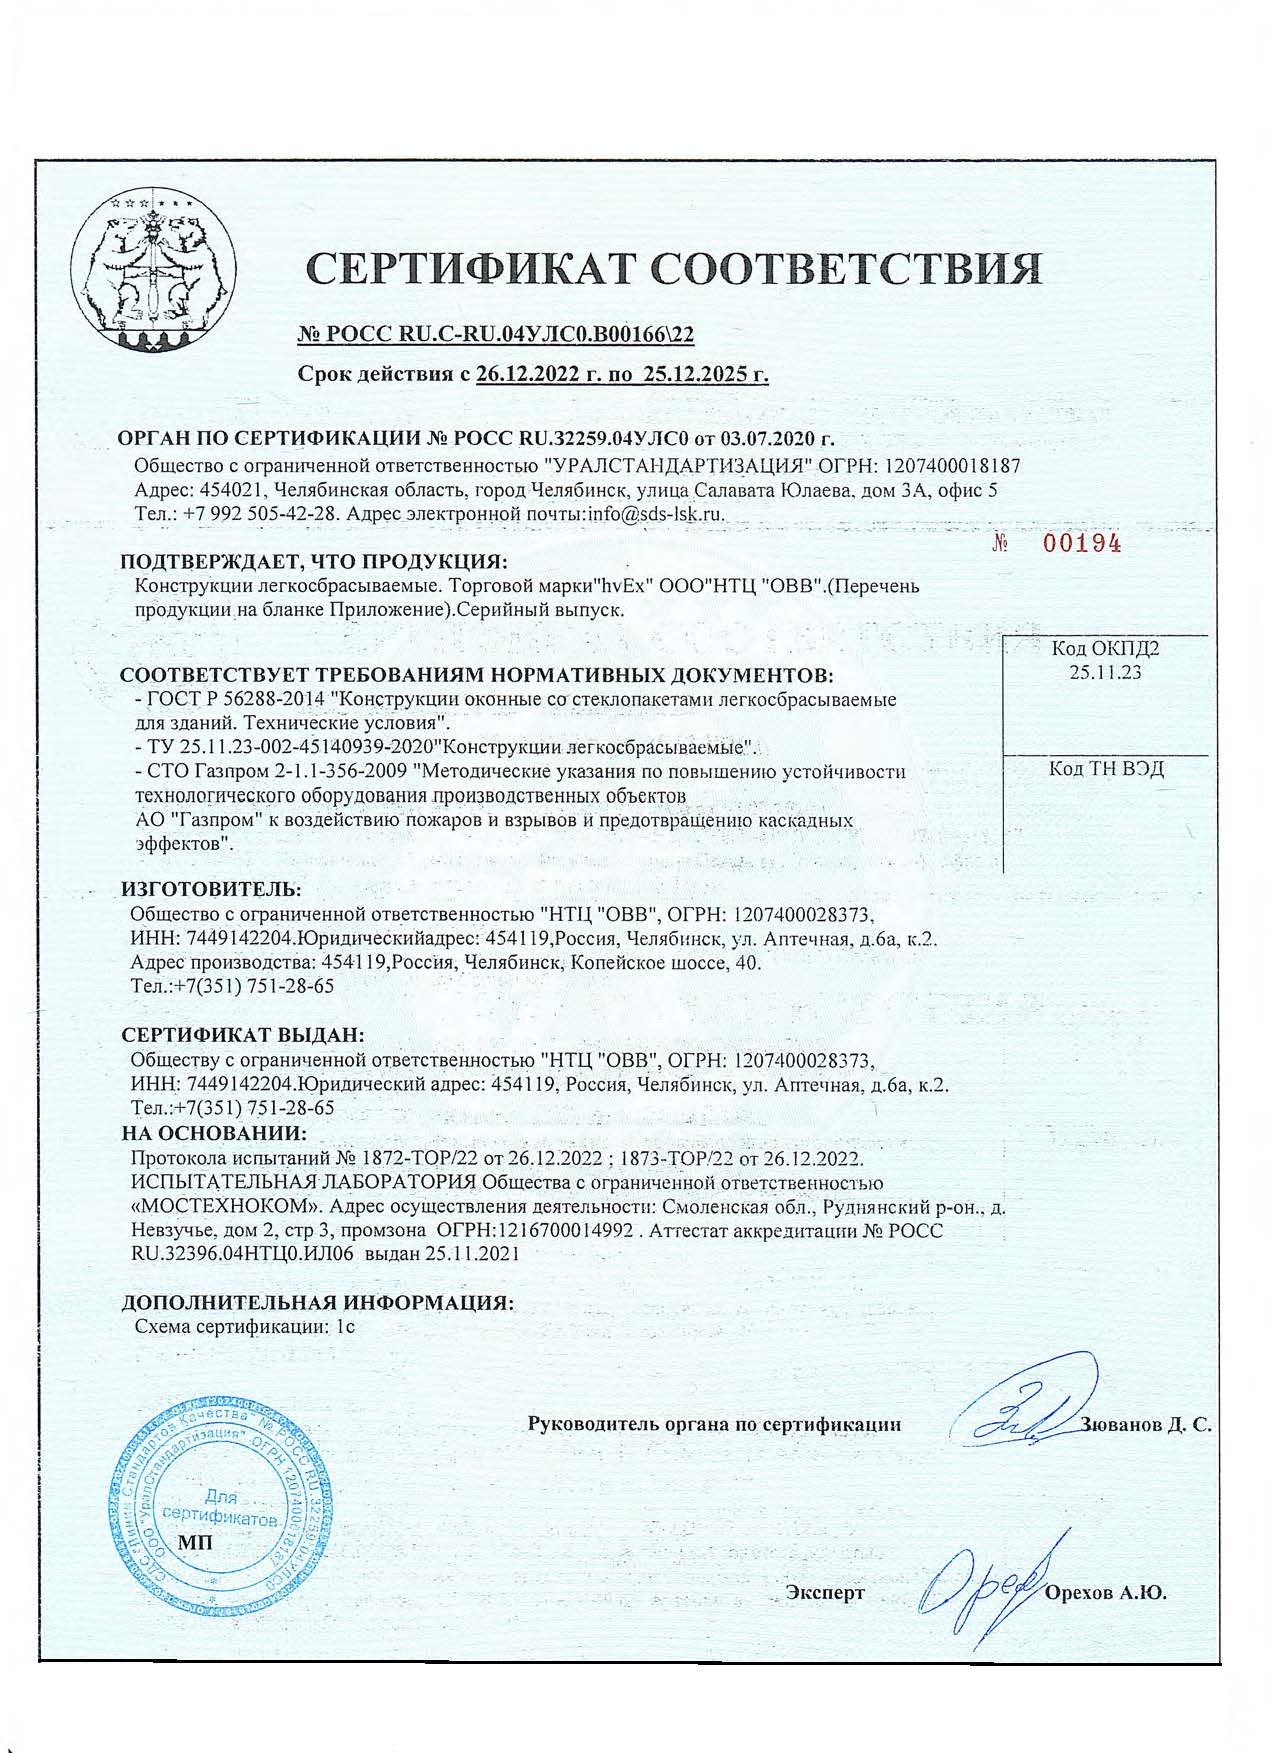 Сертификат НТЦ ОВВ